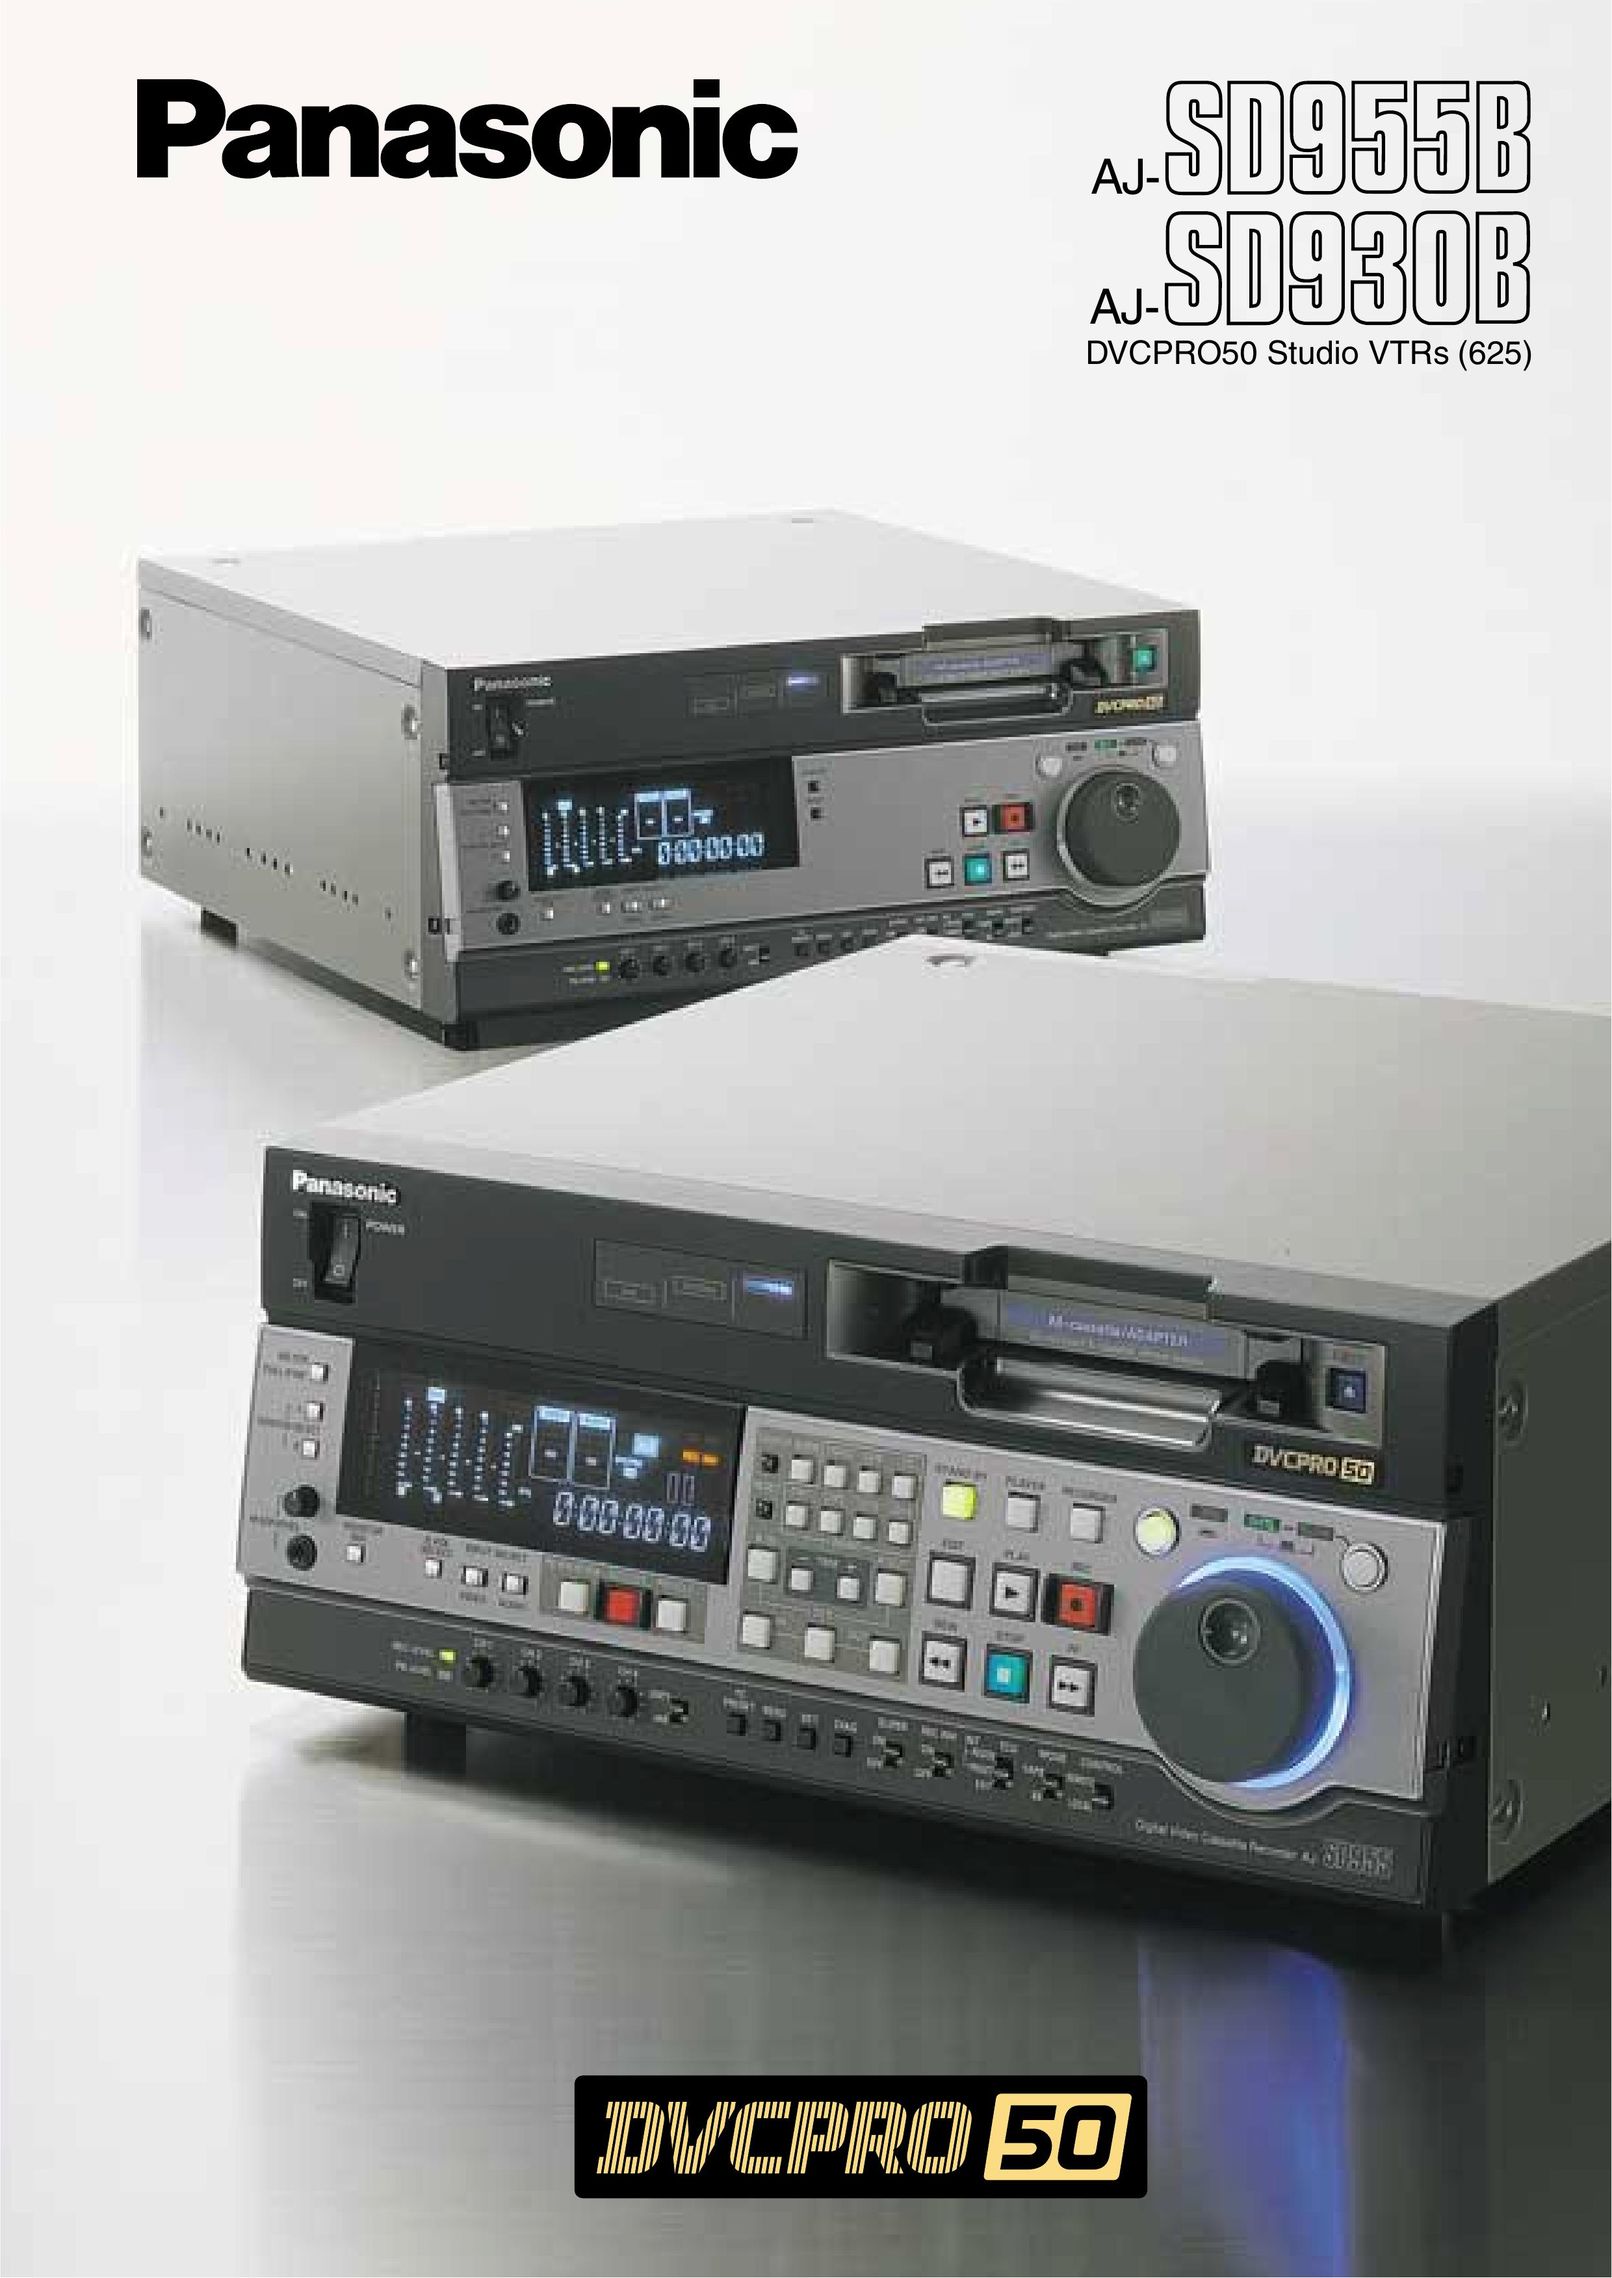 Panasonic AJ-SD955B Stereo Receiver User Manual